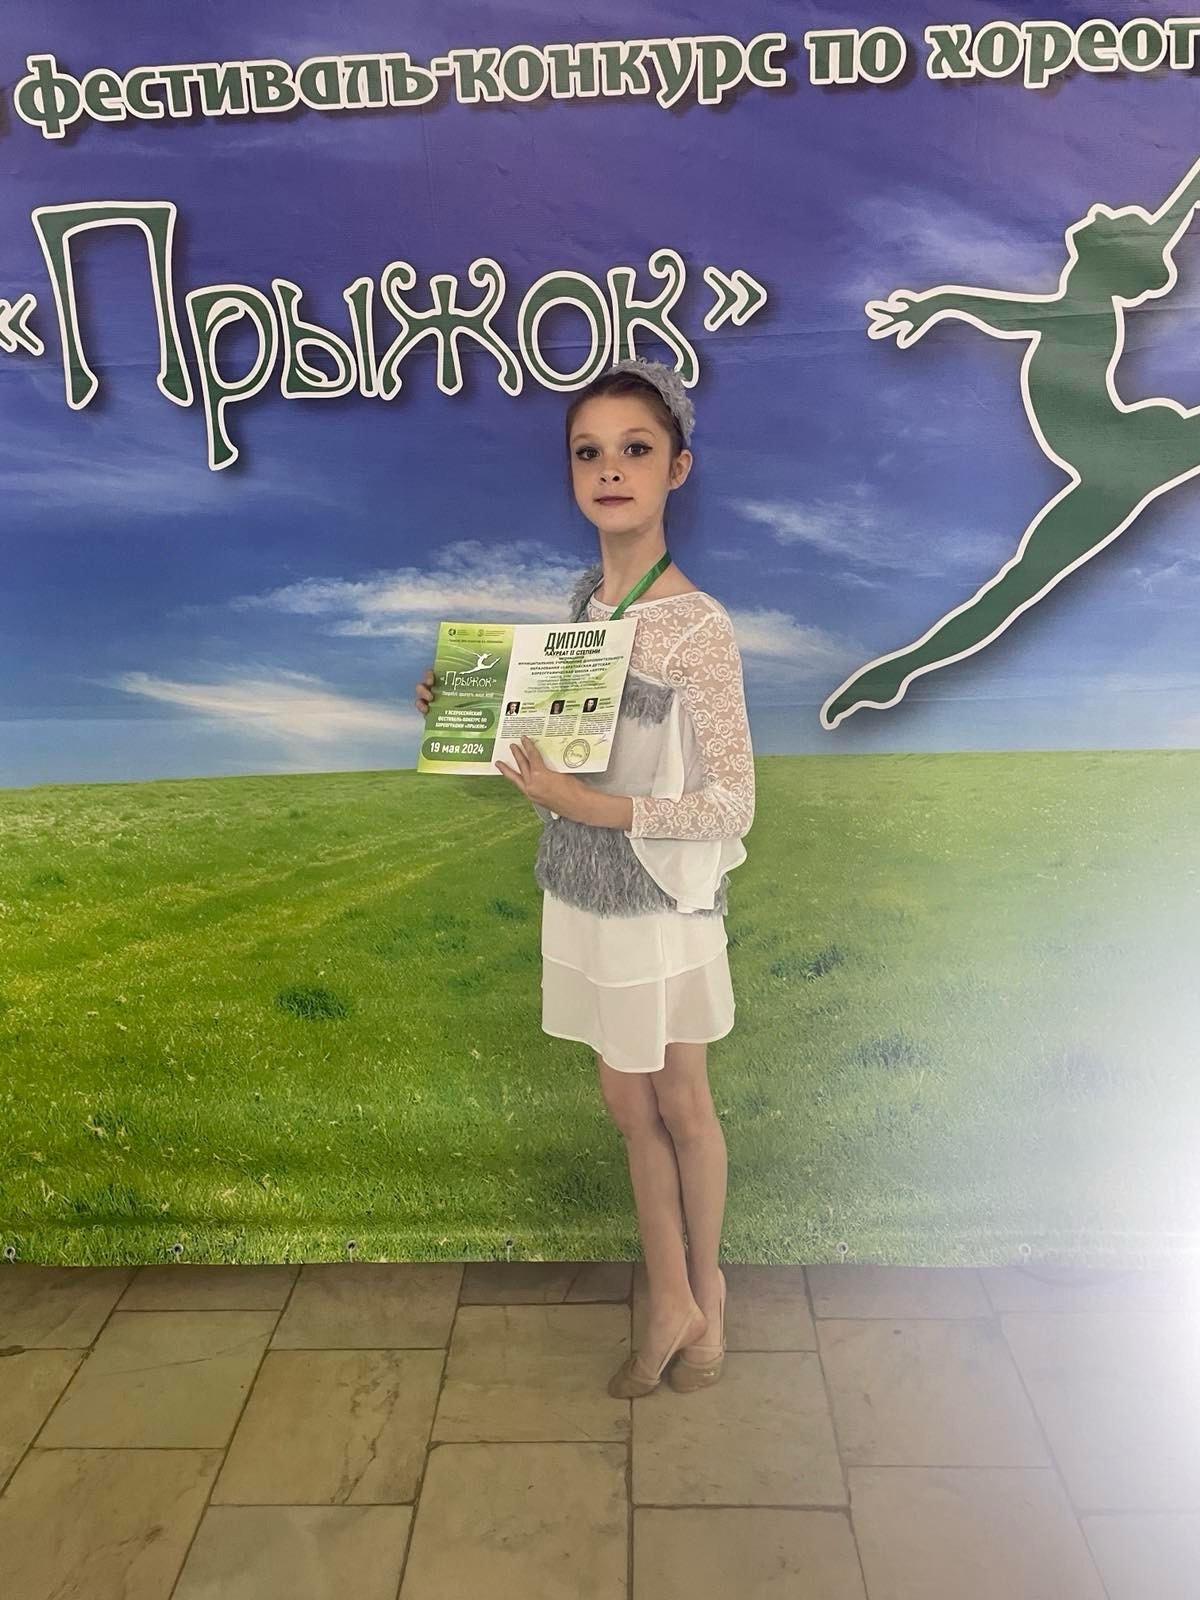 Яровая Александра, ученица 4 «а» класса, заняла почетное 2-е место во Всероссийском фестиваль- конкурсе по хореографии «Прыжок» в категории «современная хореография, дети от 10 до 12 лет».